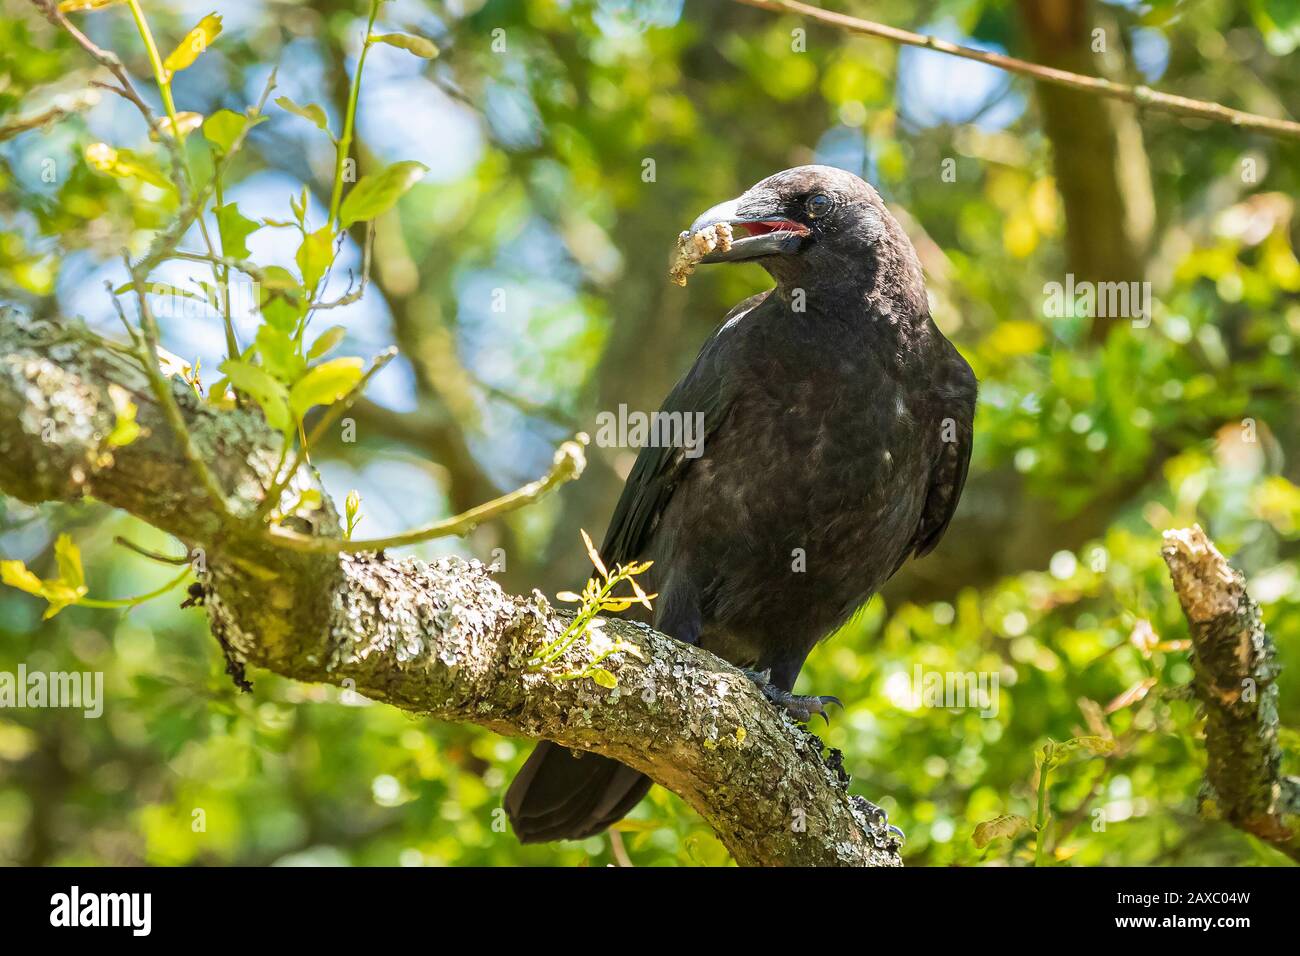 Primer plano de un carrion crow Corvus corone negro pájaro posado en un árbol Foto de stock